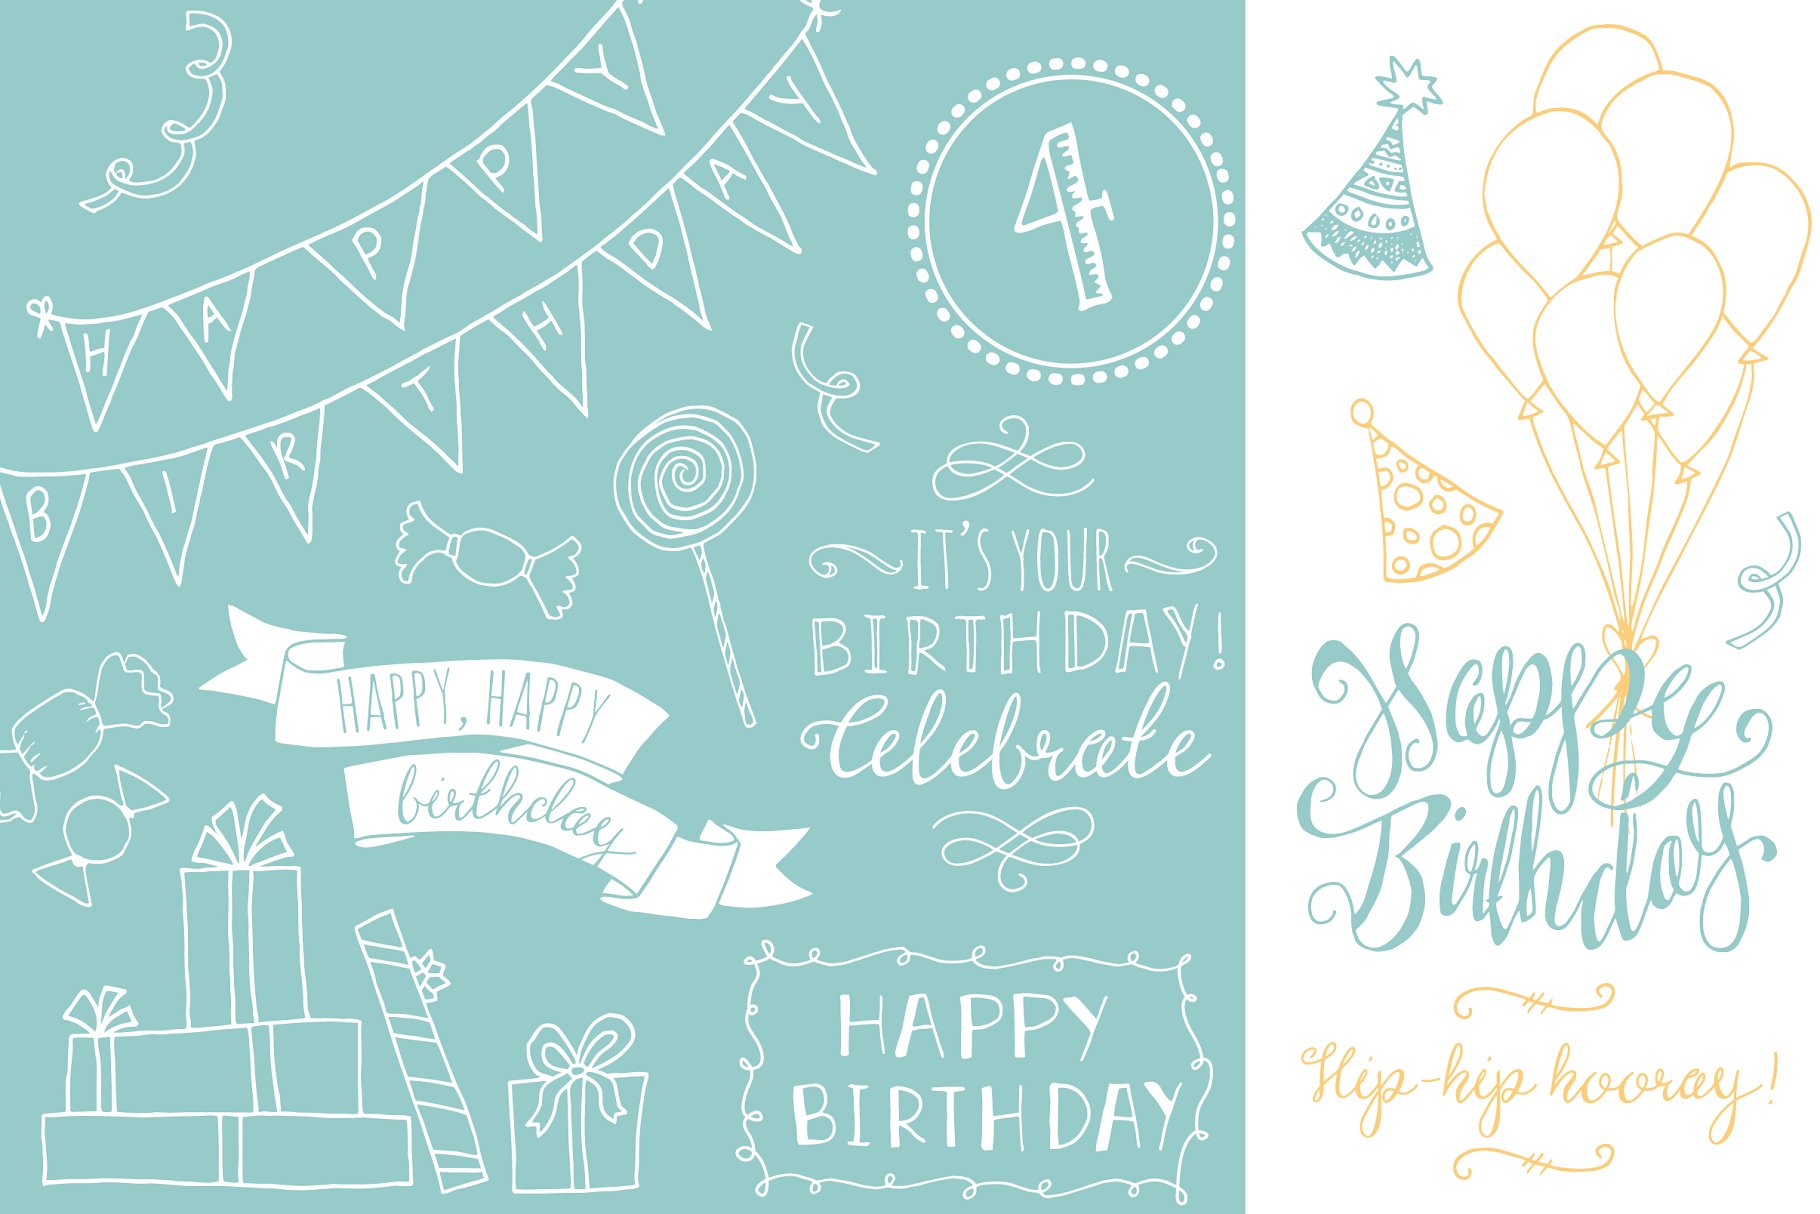 生日聚会主题装饰物料设计元素 Birthday Photoshop Overlays插图(3)